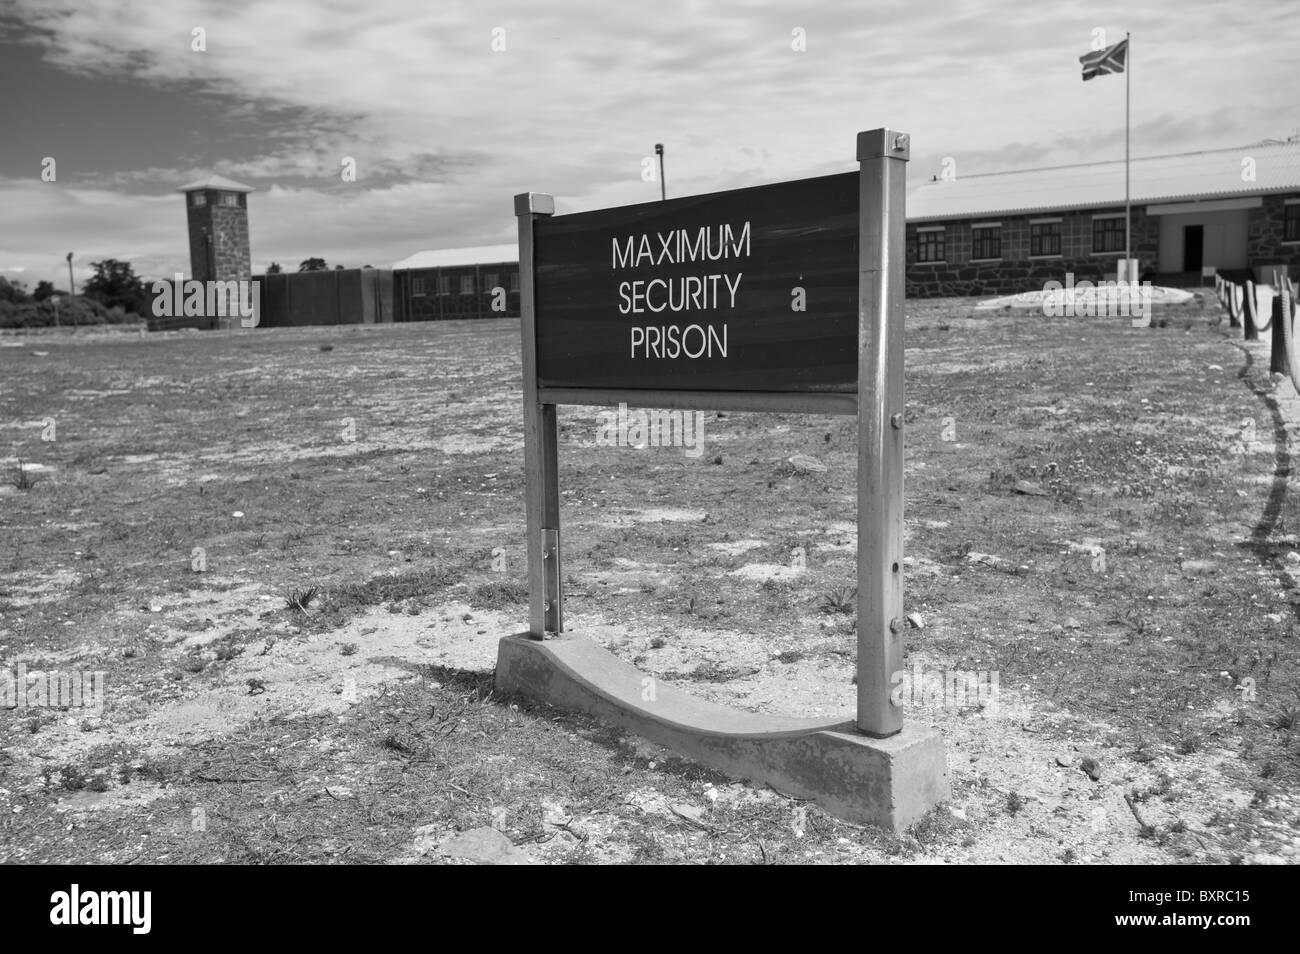 Entrée principale de l'aile des prisonniers politiques, Robben Island prison à sécurité maximum, Le Cap, Afrique du Sud Banque D'Images